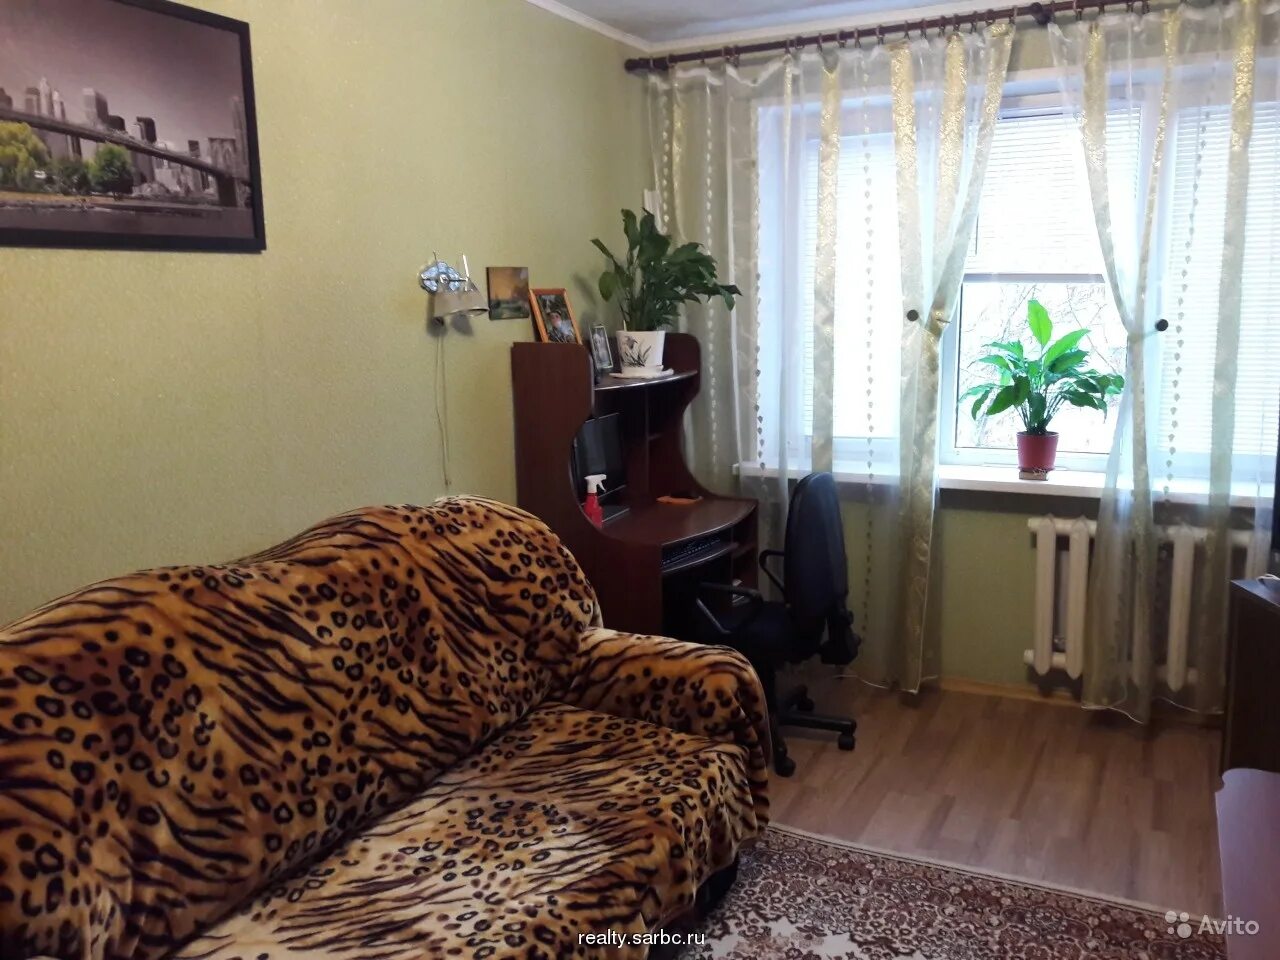 Квартира в России. Квартира 3 комнатная в Саратове. Одесская 11 Саратов квартира купить 3 комнатная.